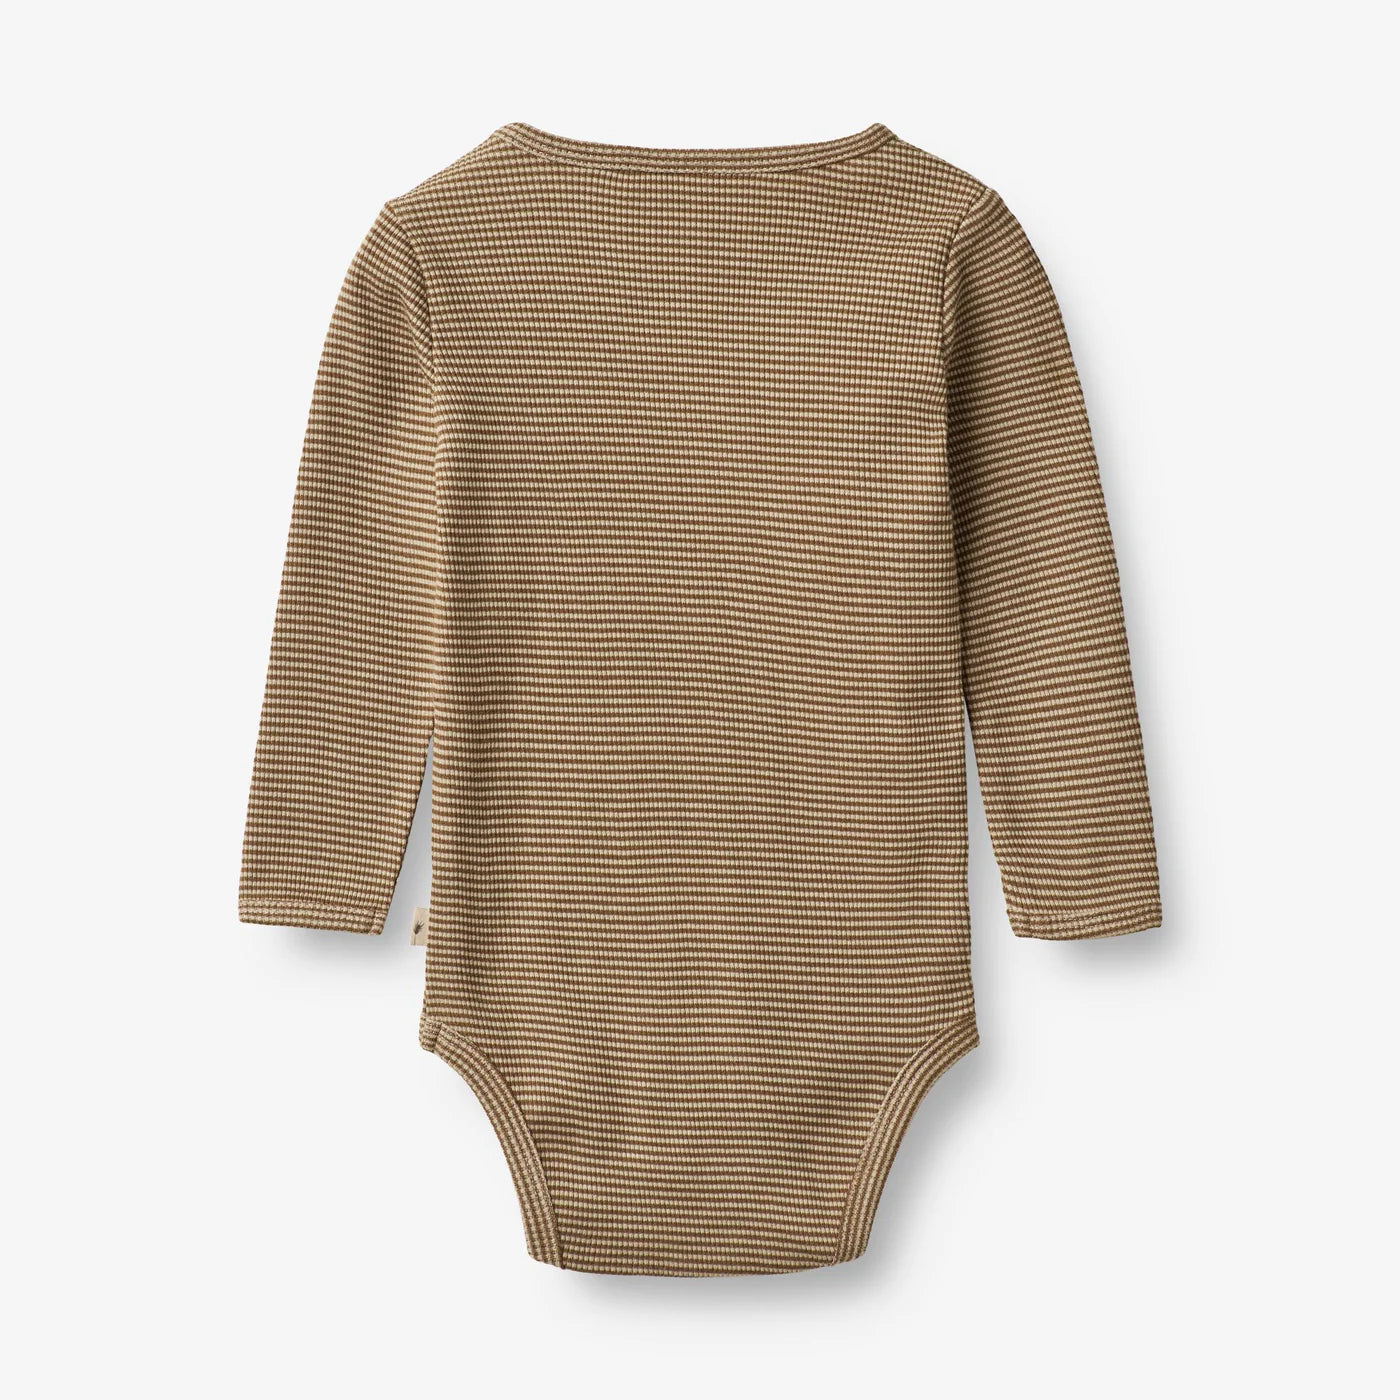 Produktbild: wheat - Body mit Streifen beige von wheat im Onlineshop von dasMikruli - Dein Shop für Baby Erstausstattung